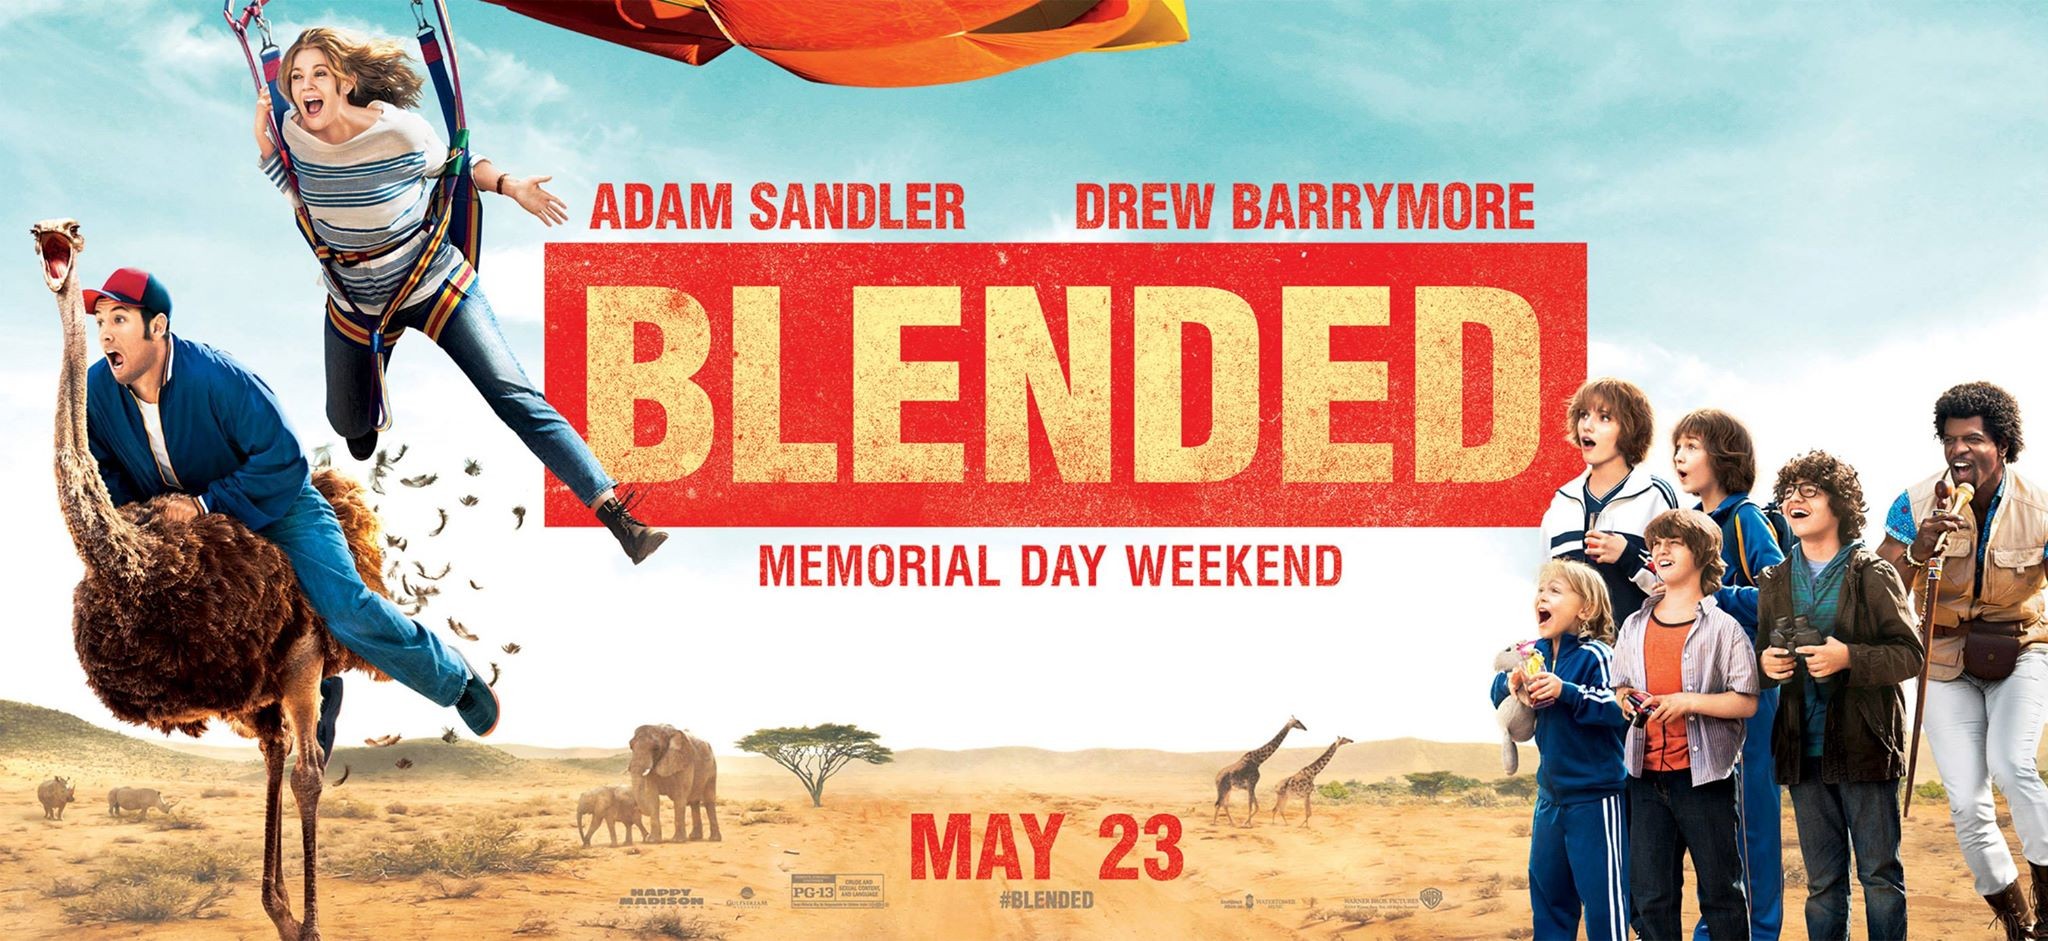 Mega Sized Movie Poster Image for Blended (#4 of 7)